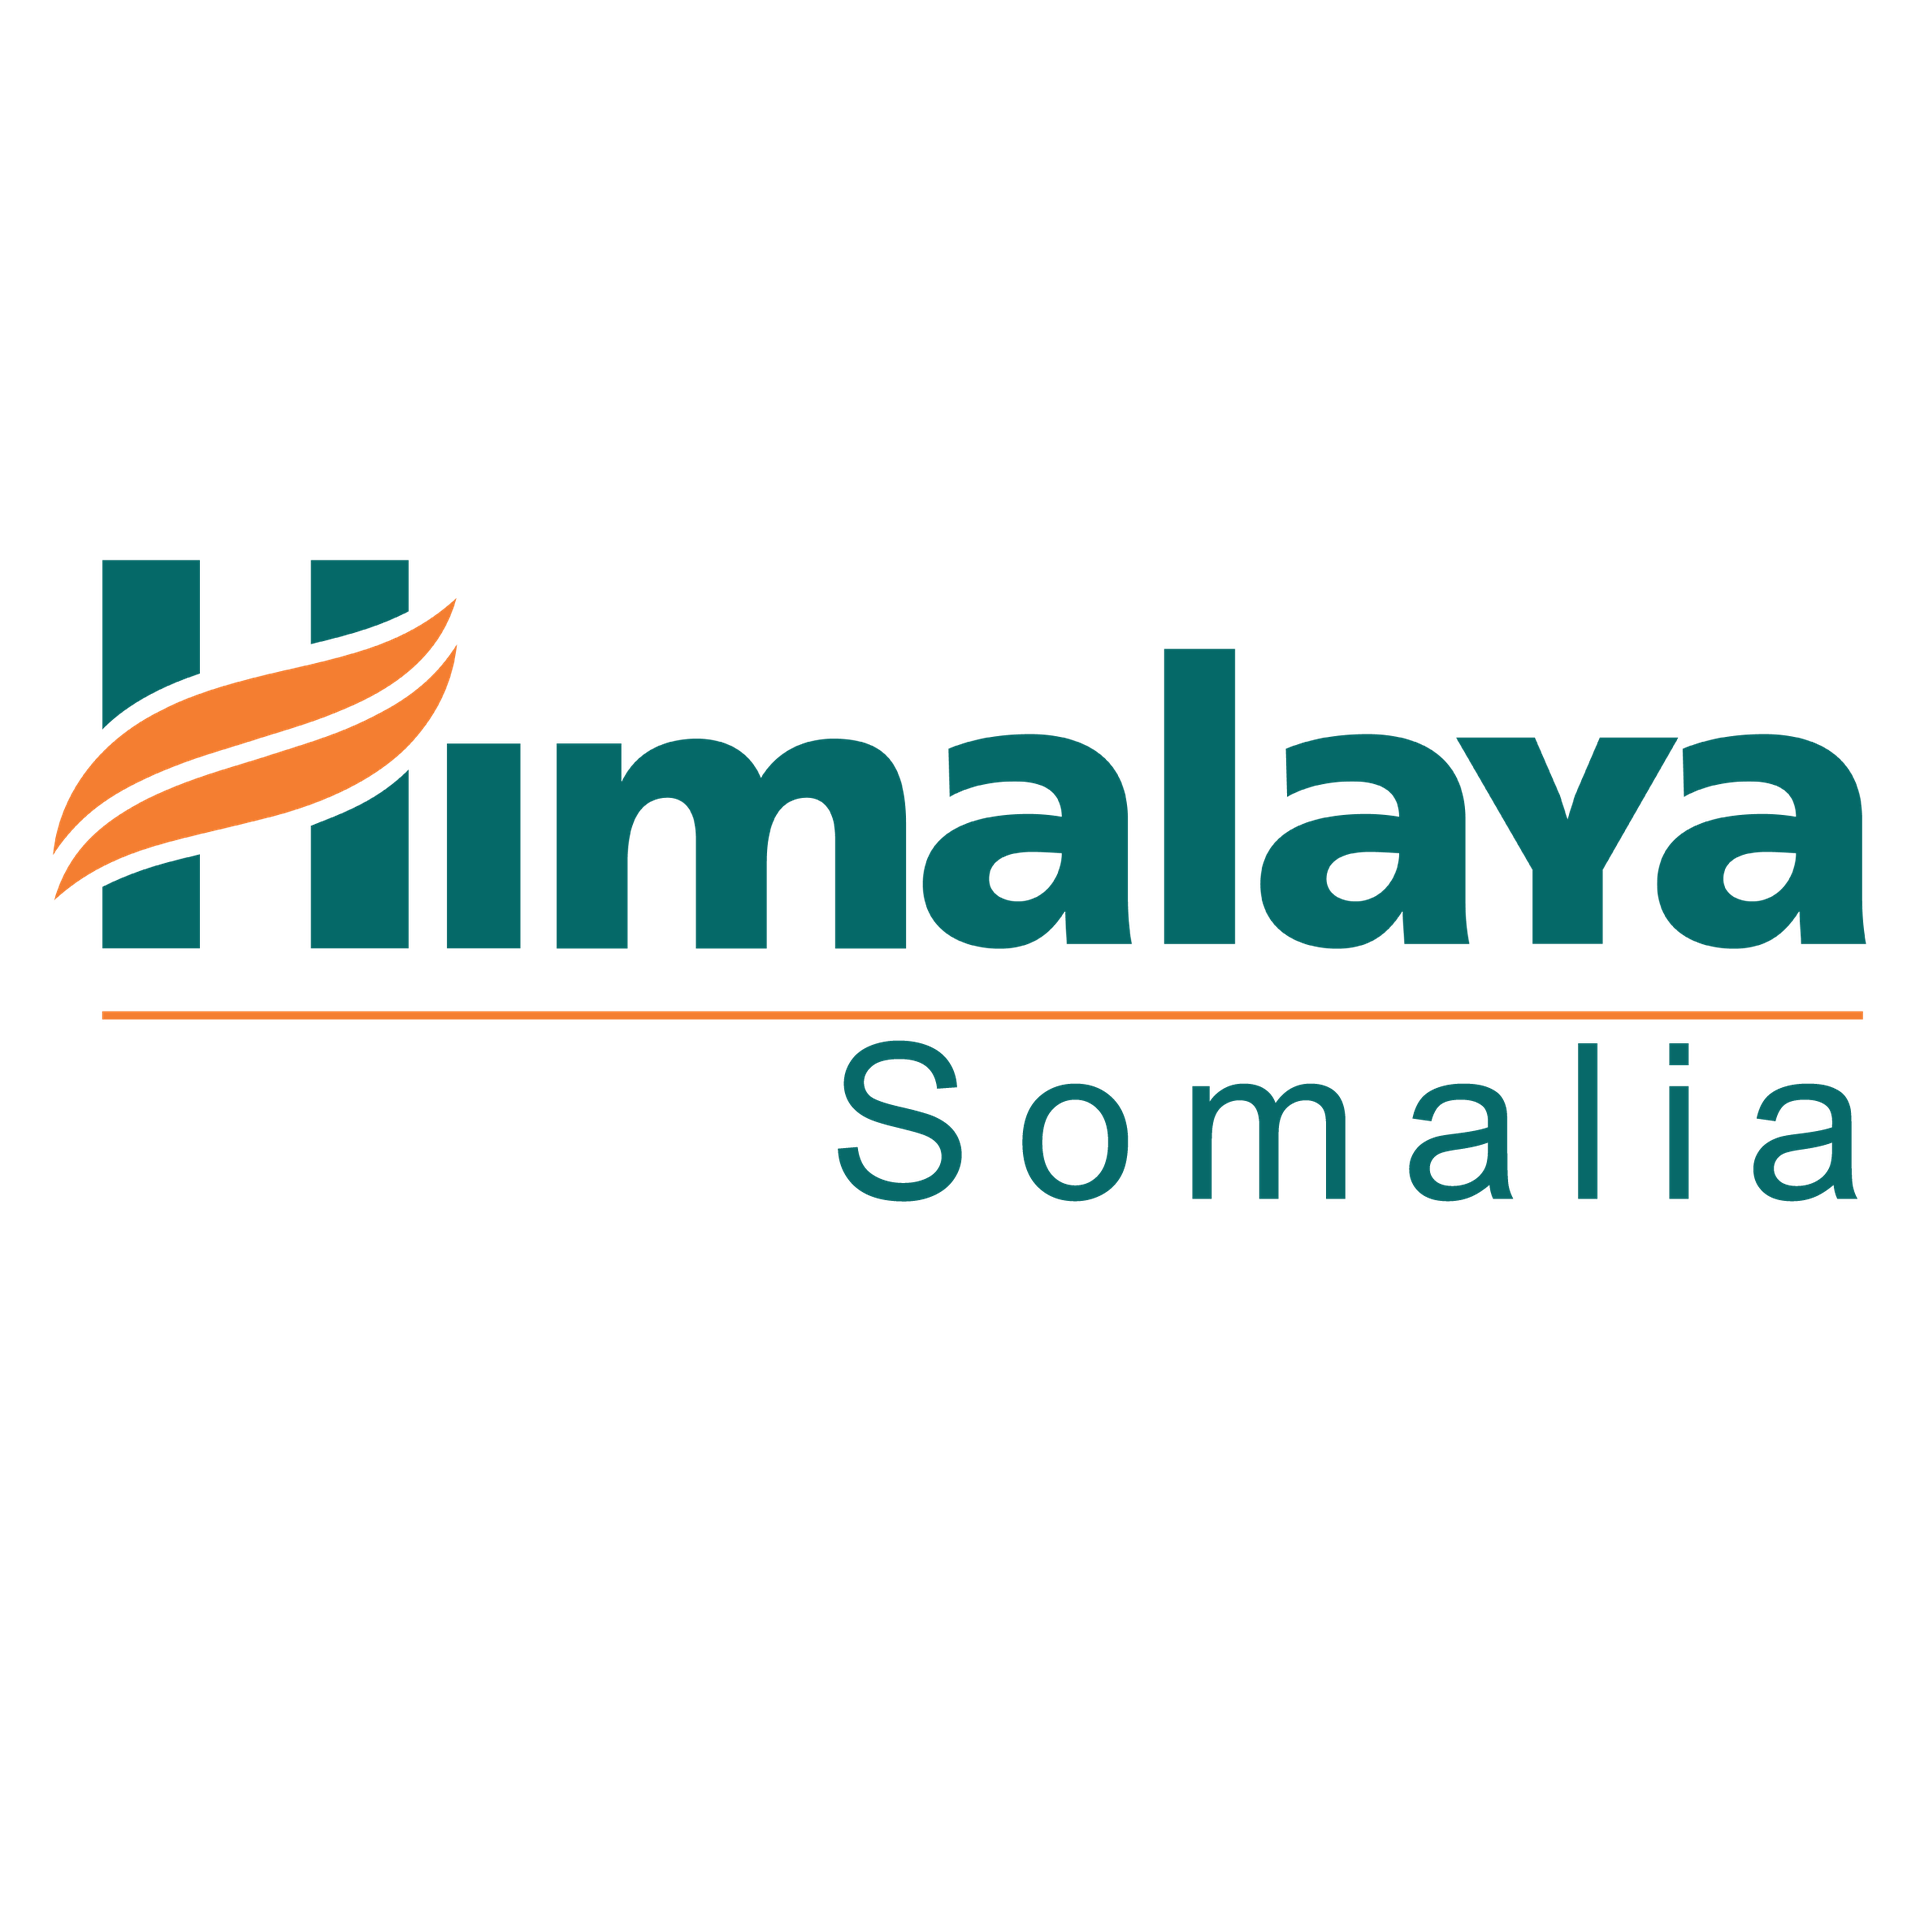 Himilaya